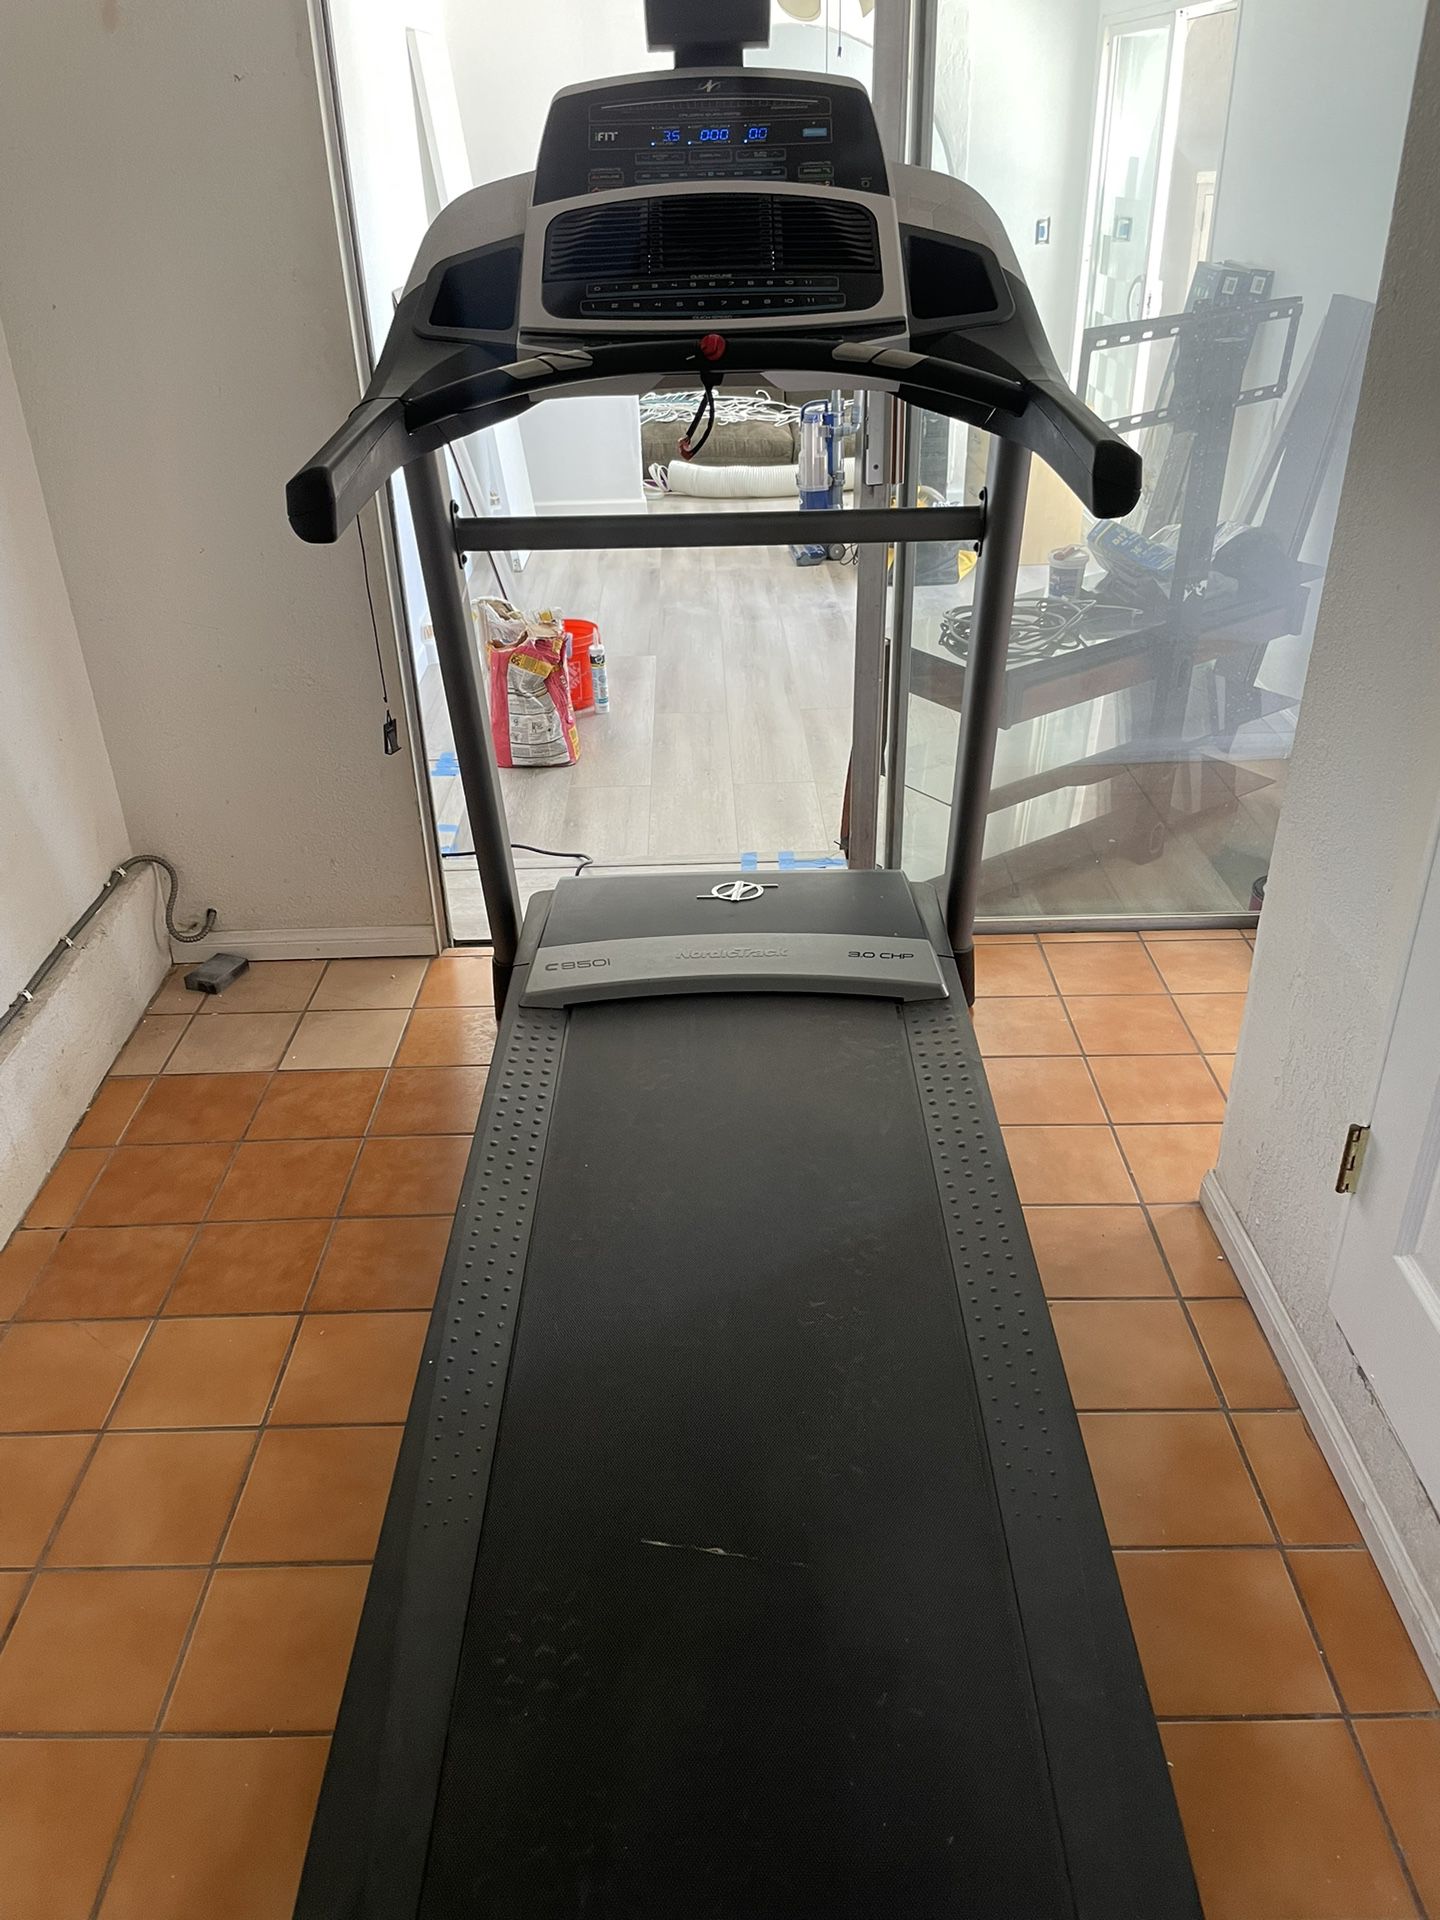 NordicTrack C950i Treadmill 